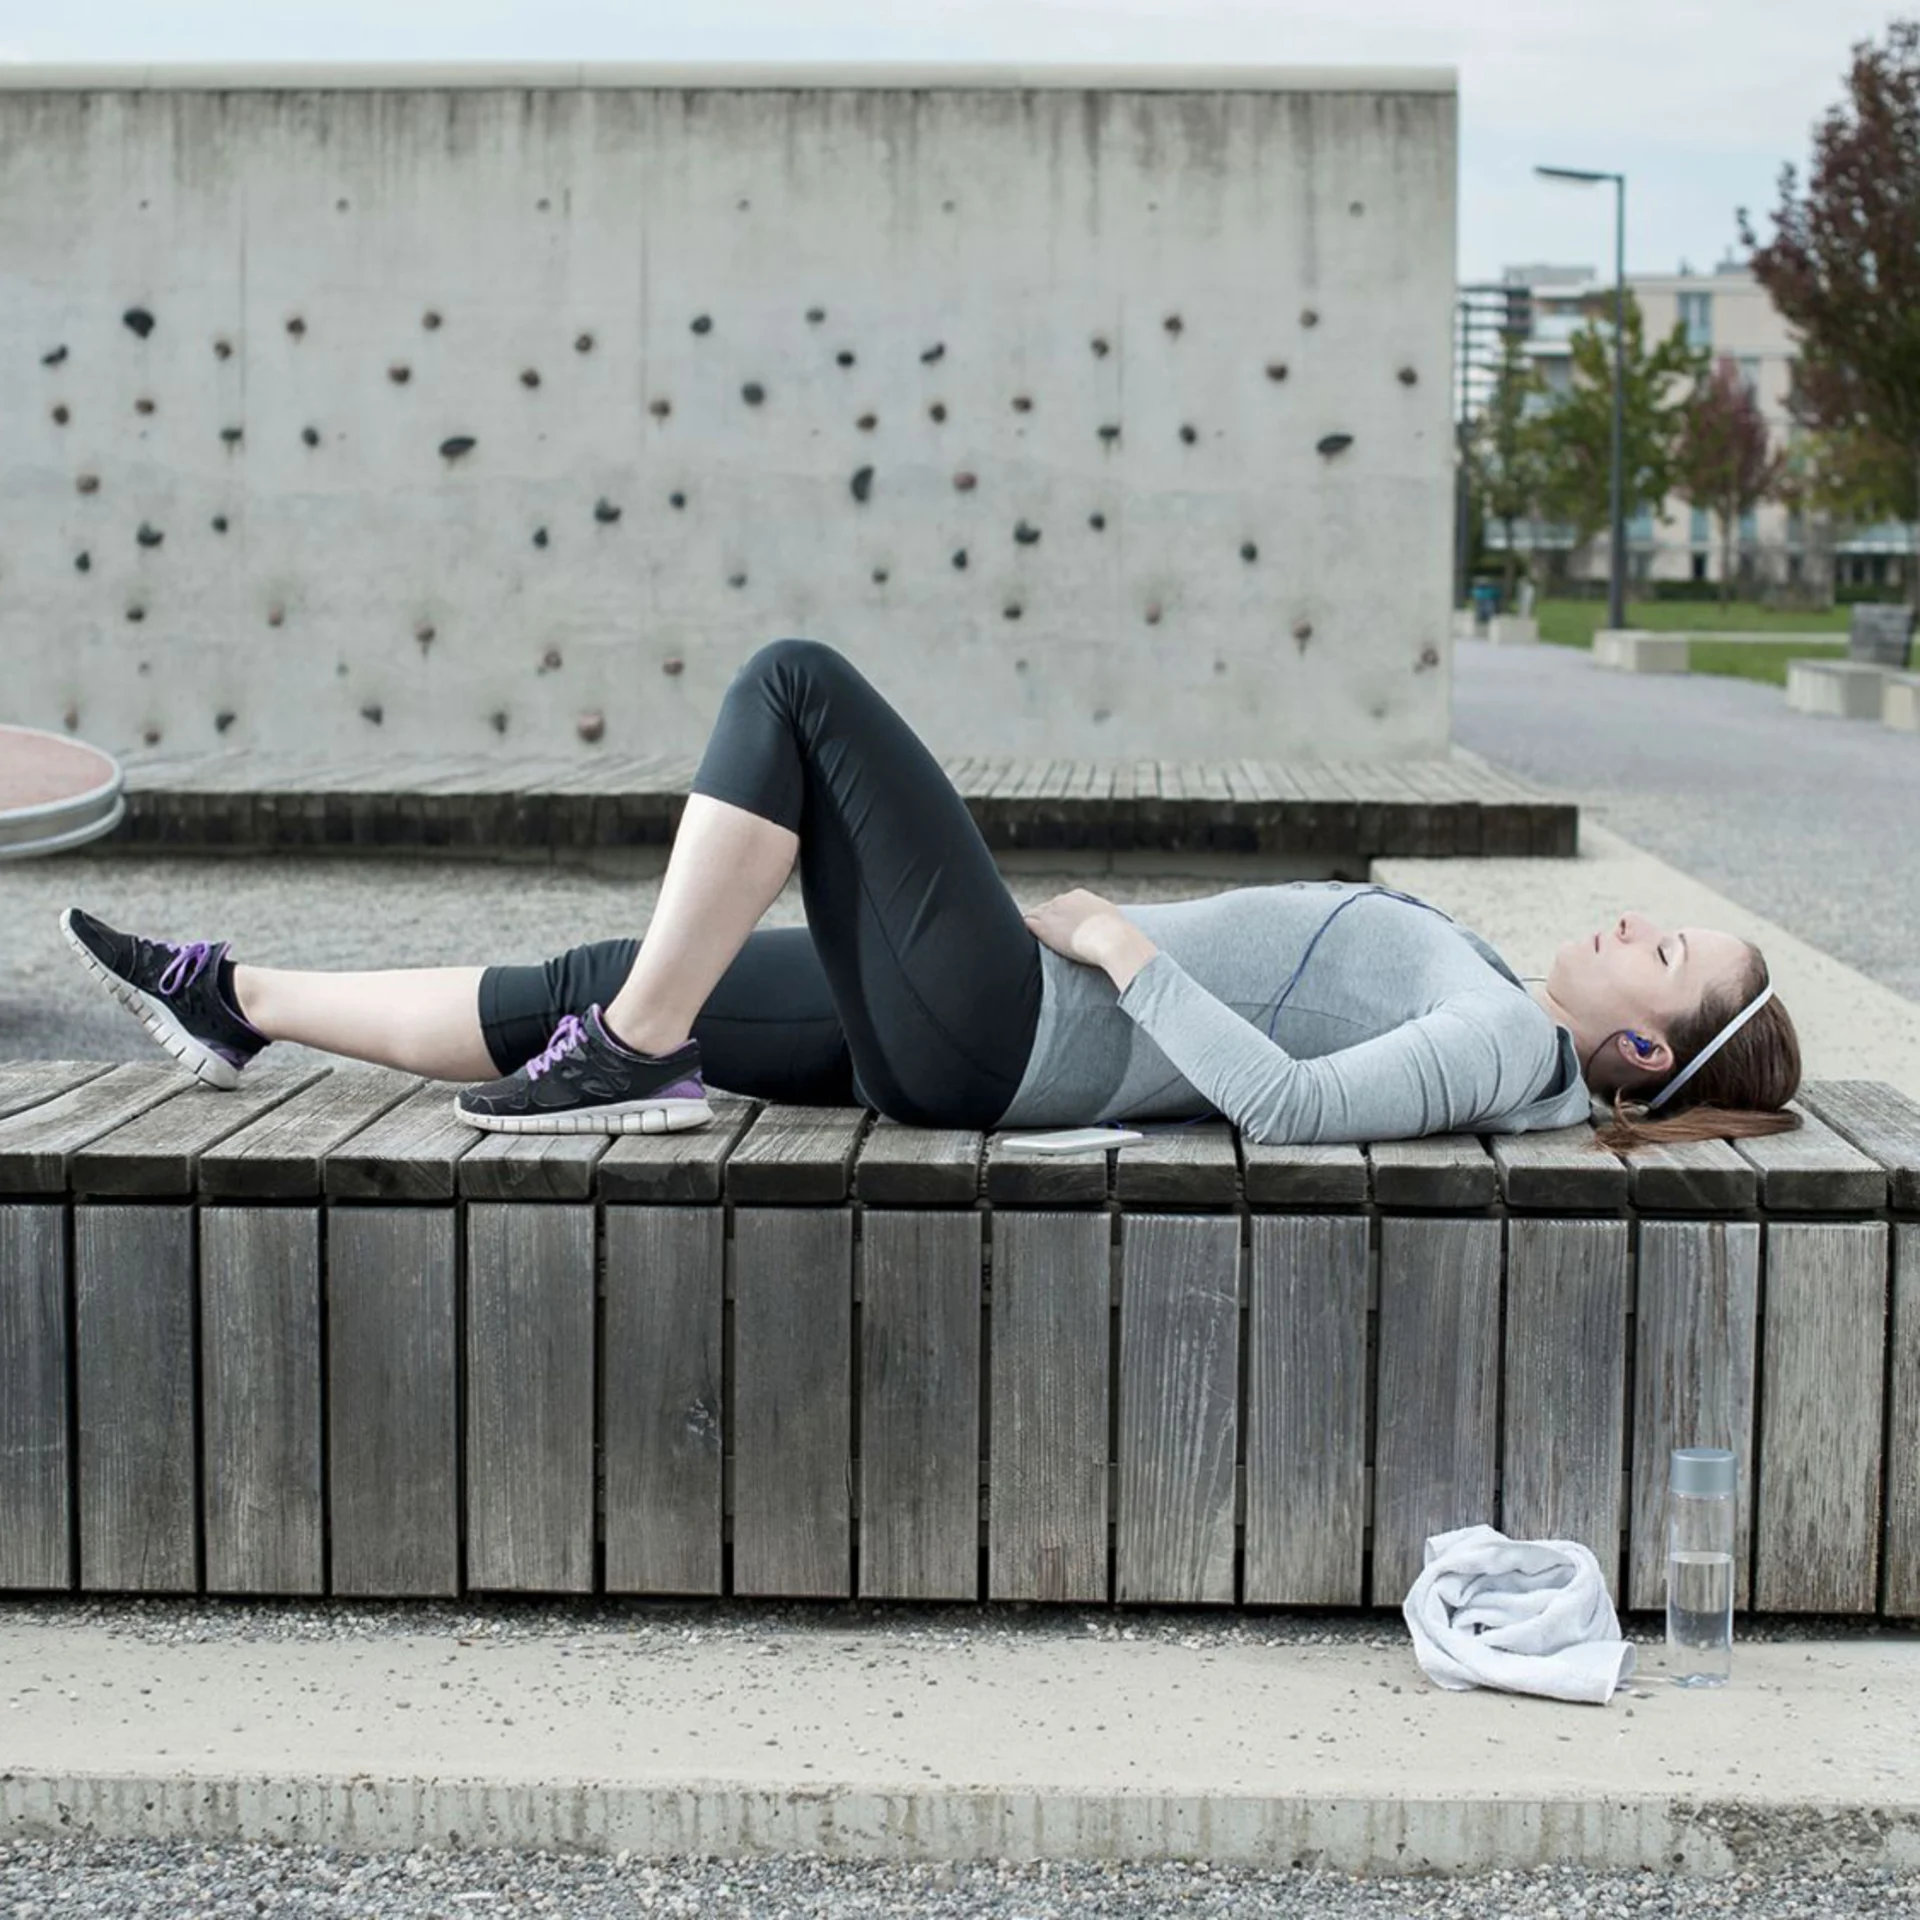 Una donna si sdraia su una panchina dopo aver fatto esercizio